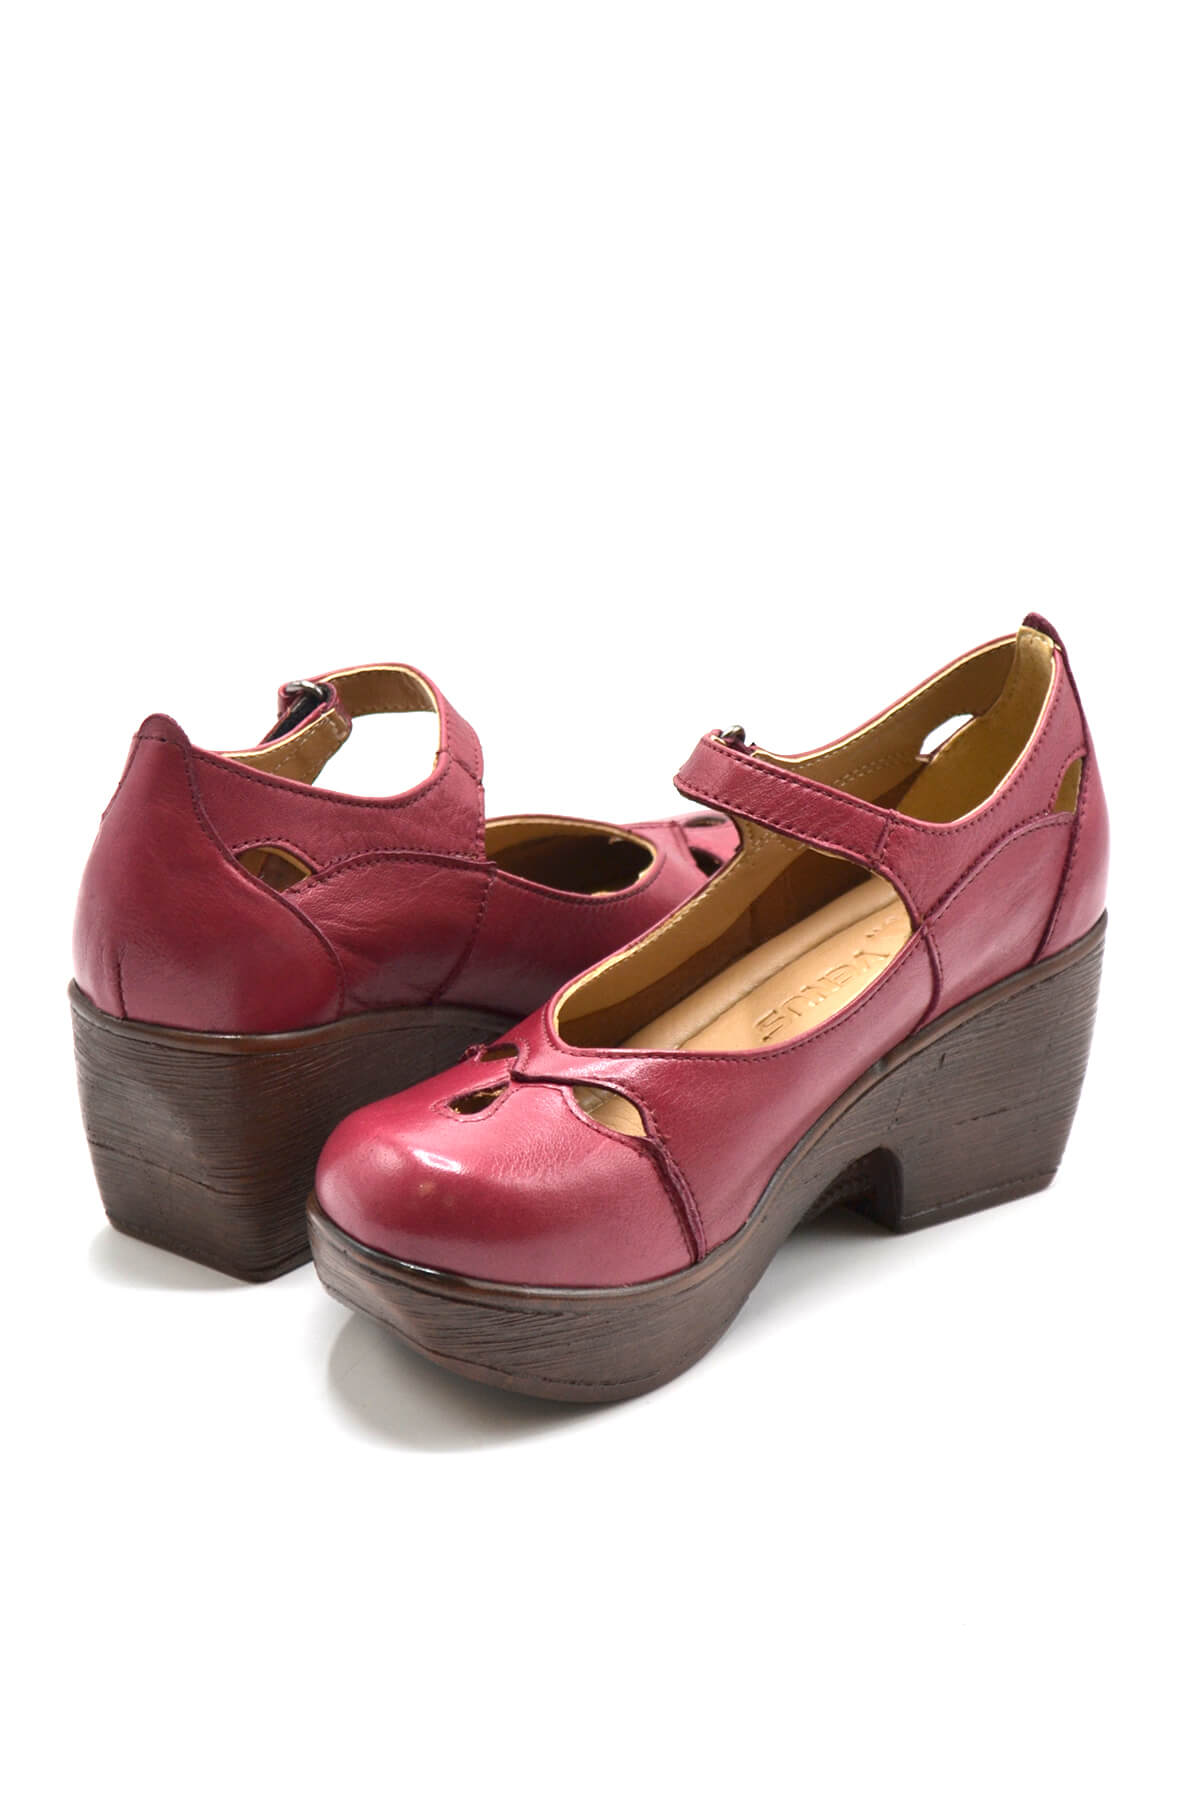 Kadın Apartman Topuk Deri Ayakkabı Vişne 1912501 - Thumbnail